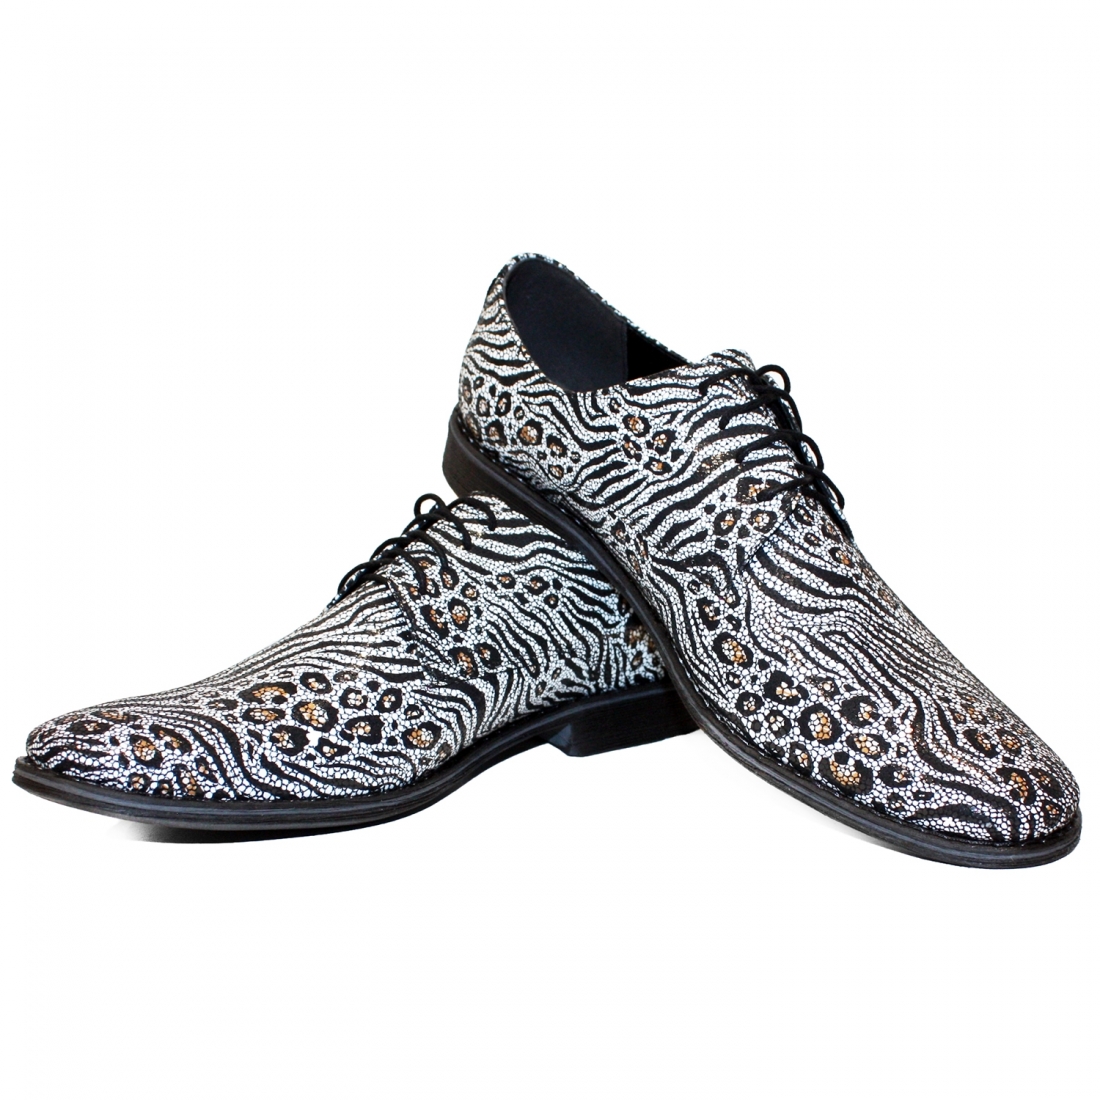 Modello Zeberro - Buty Klasyczne - Handmade Colorful Italian Leather Shoes